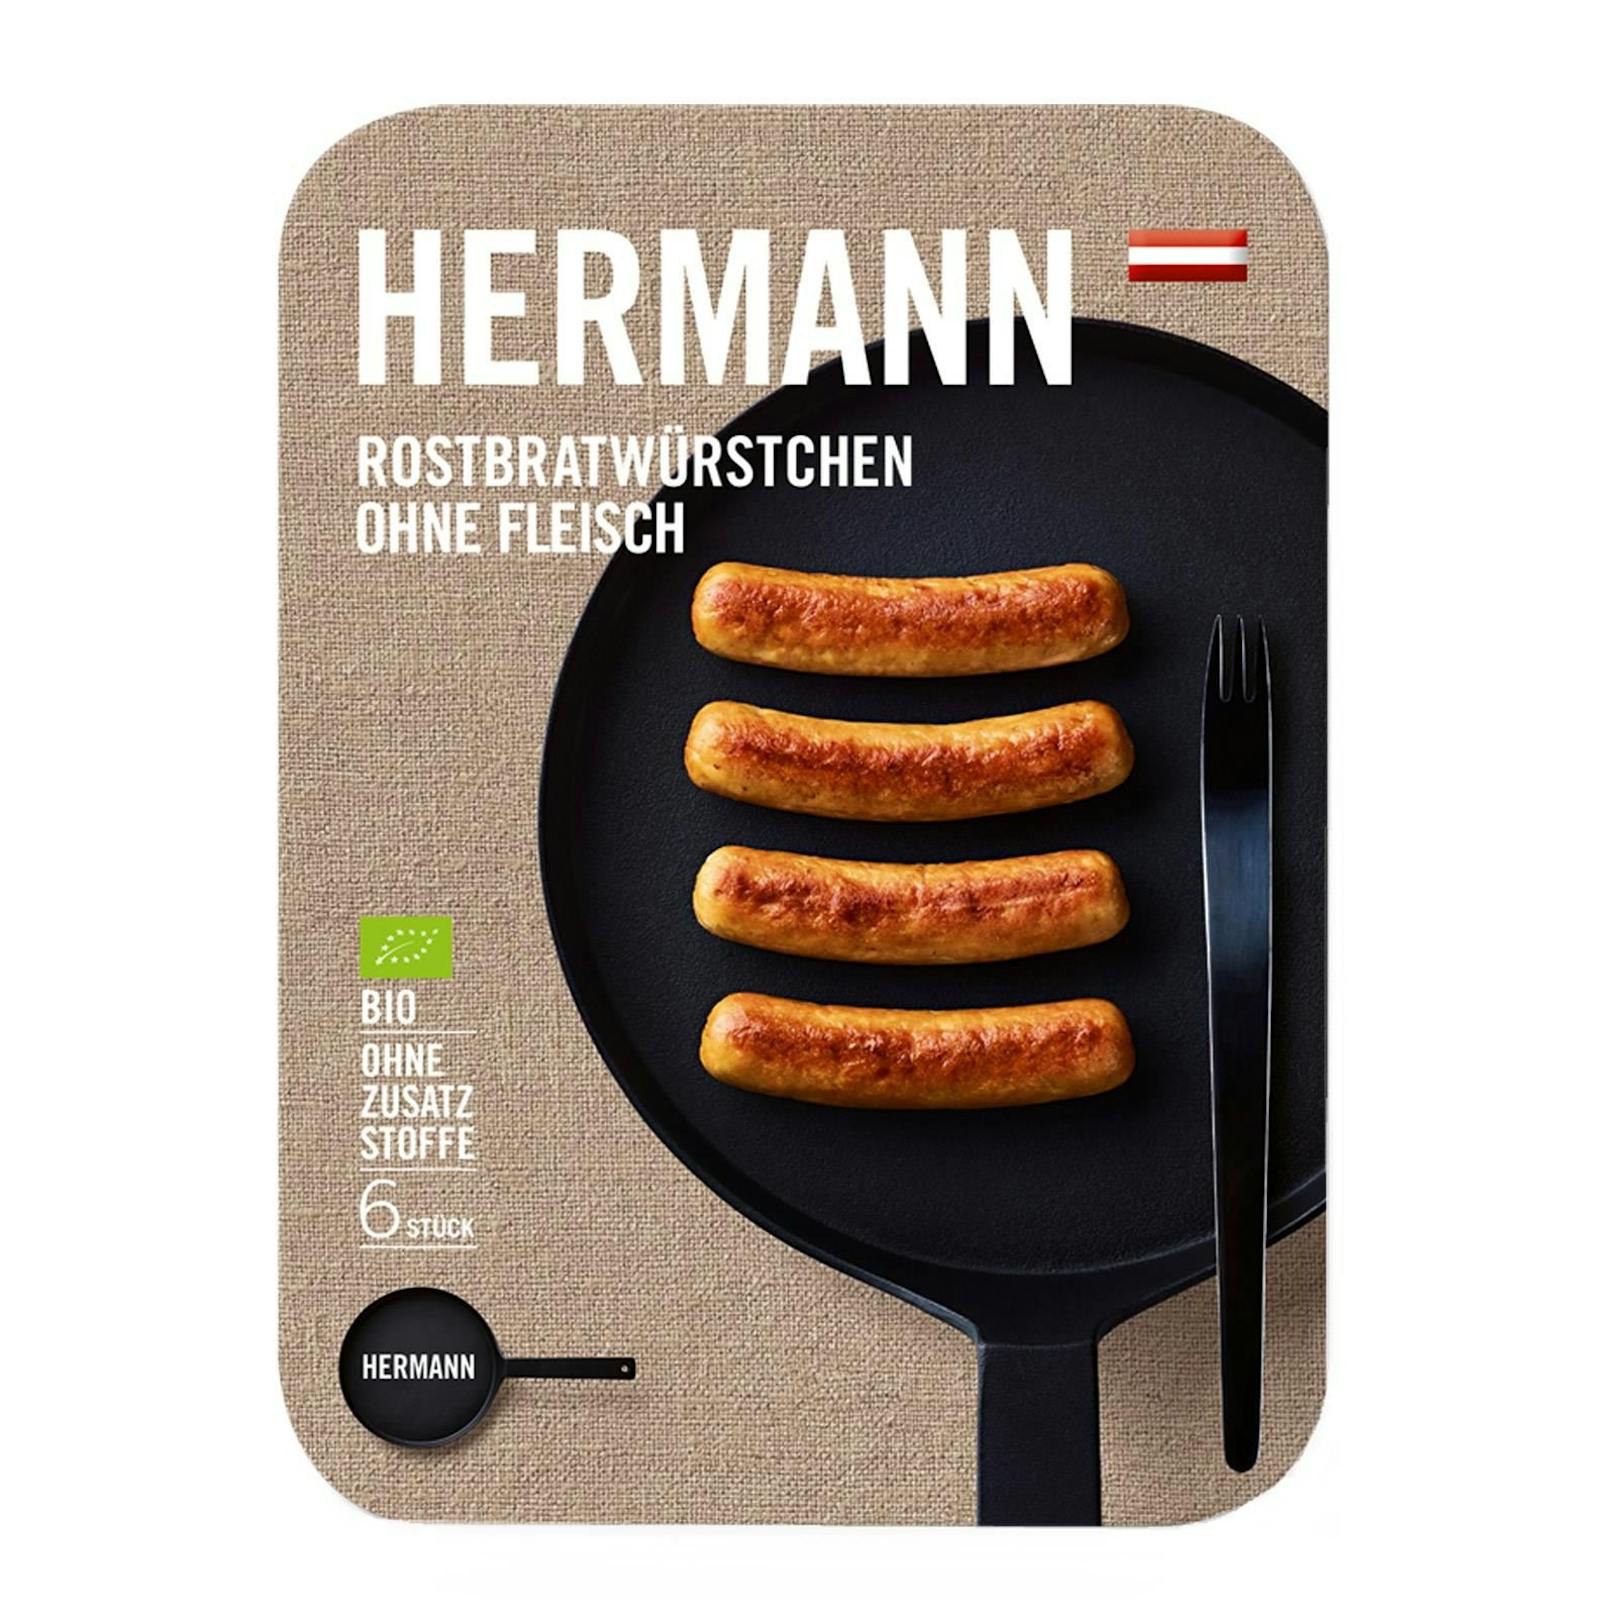 In "Herrmann Rostbratwürstchen ohne Fleisch, vegetarisch" fand "Öko-Test besonders viele Mineralölrückstände.